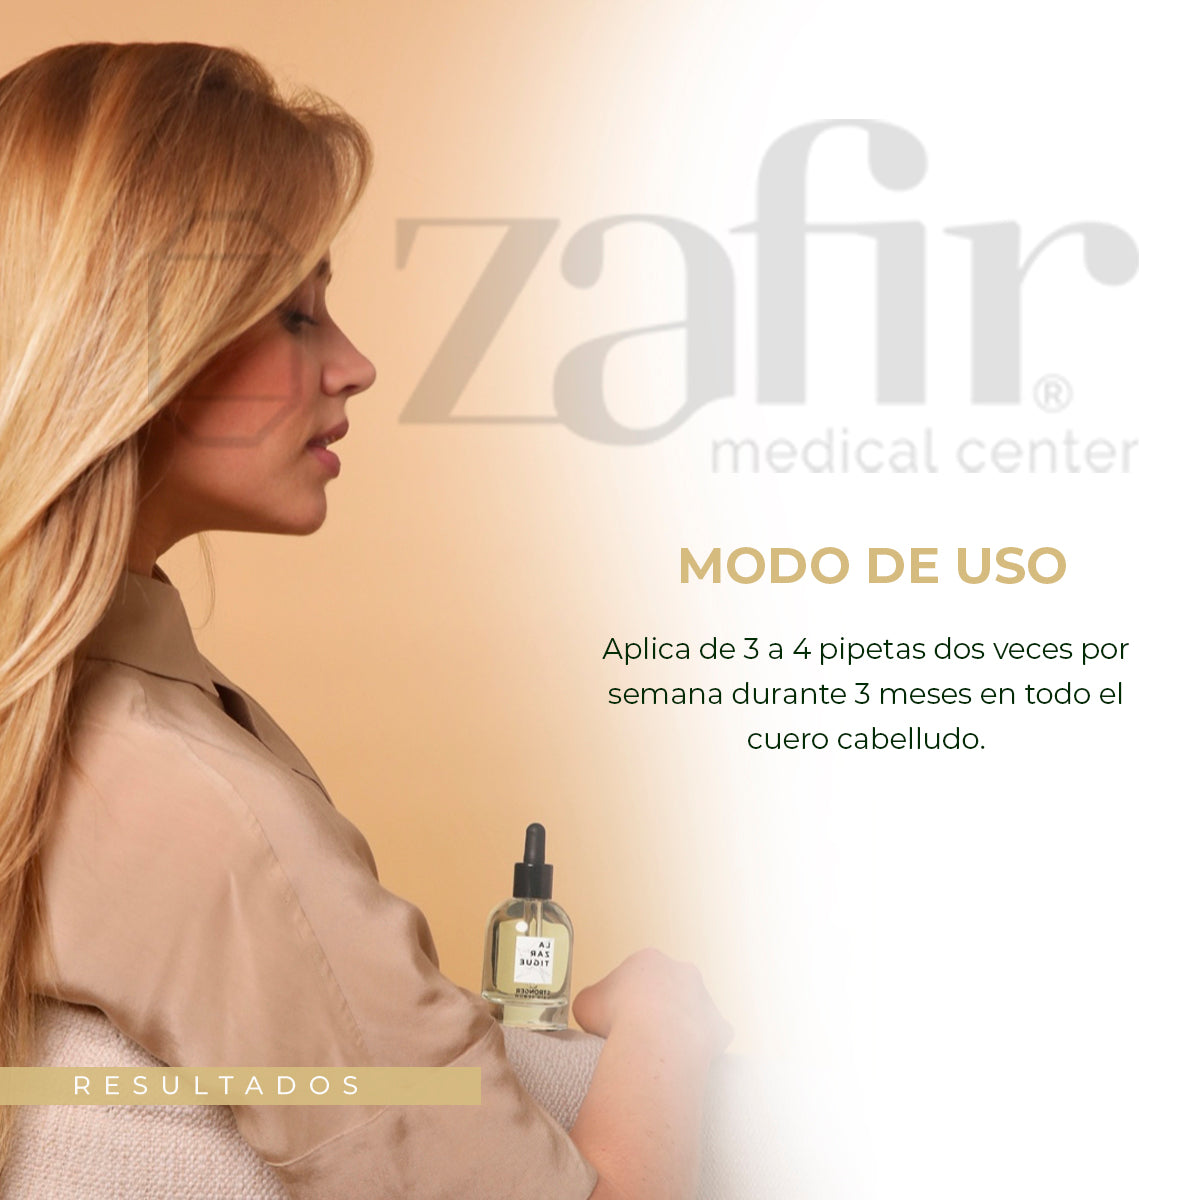 Sérum Capilar Anticaída Lazartigue - Stronger Hair Serum Fortificante (50 ml)